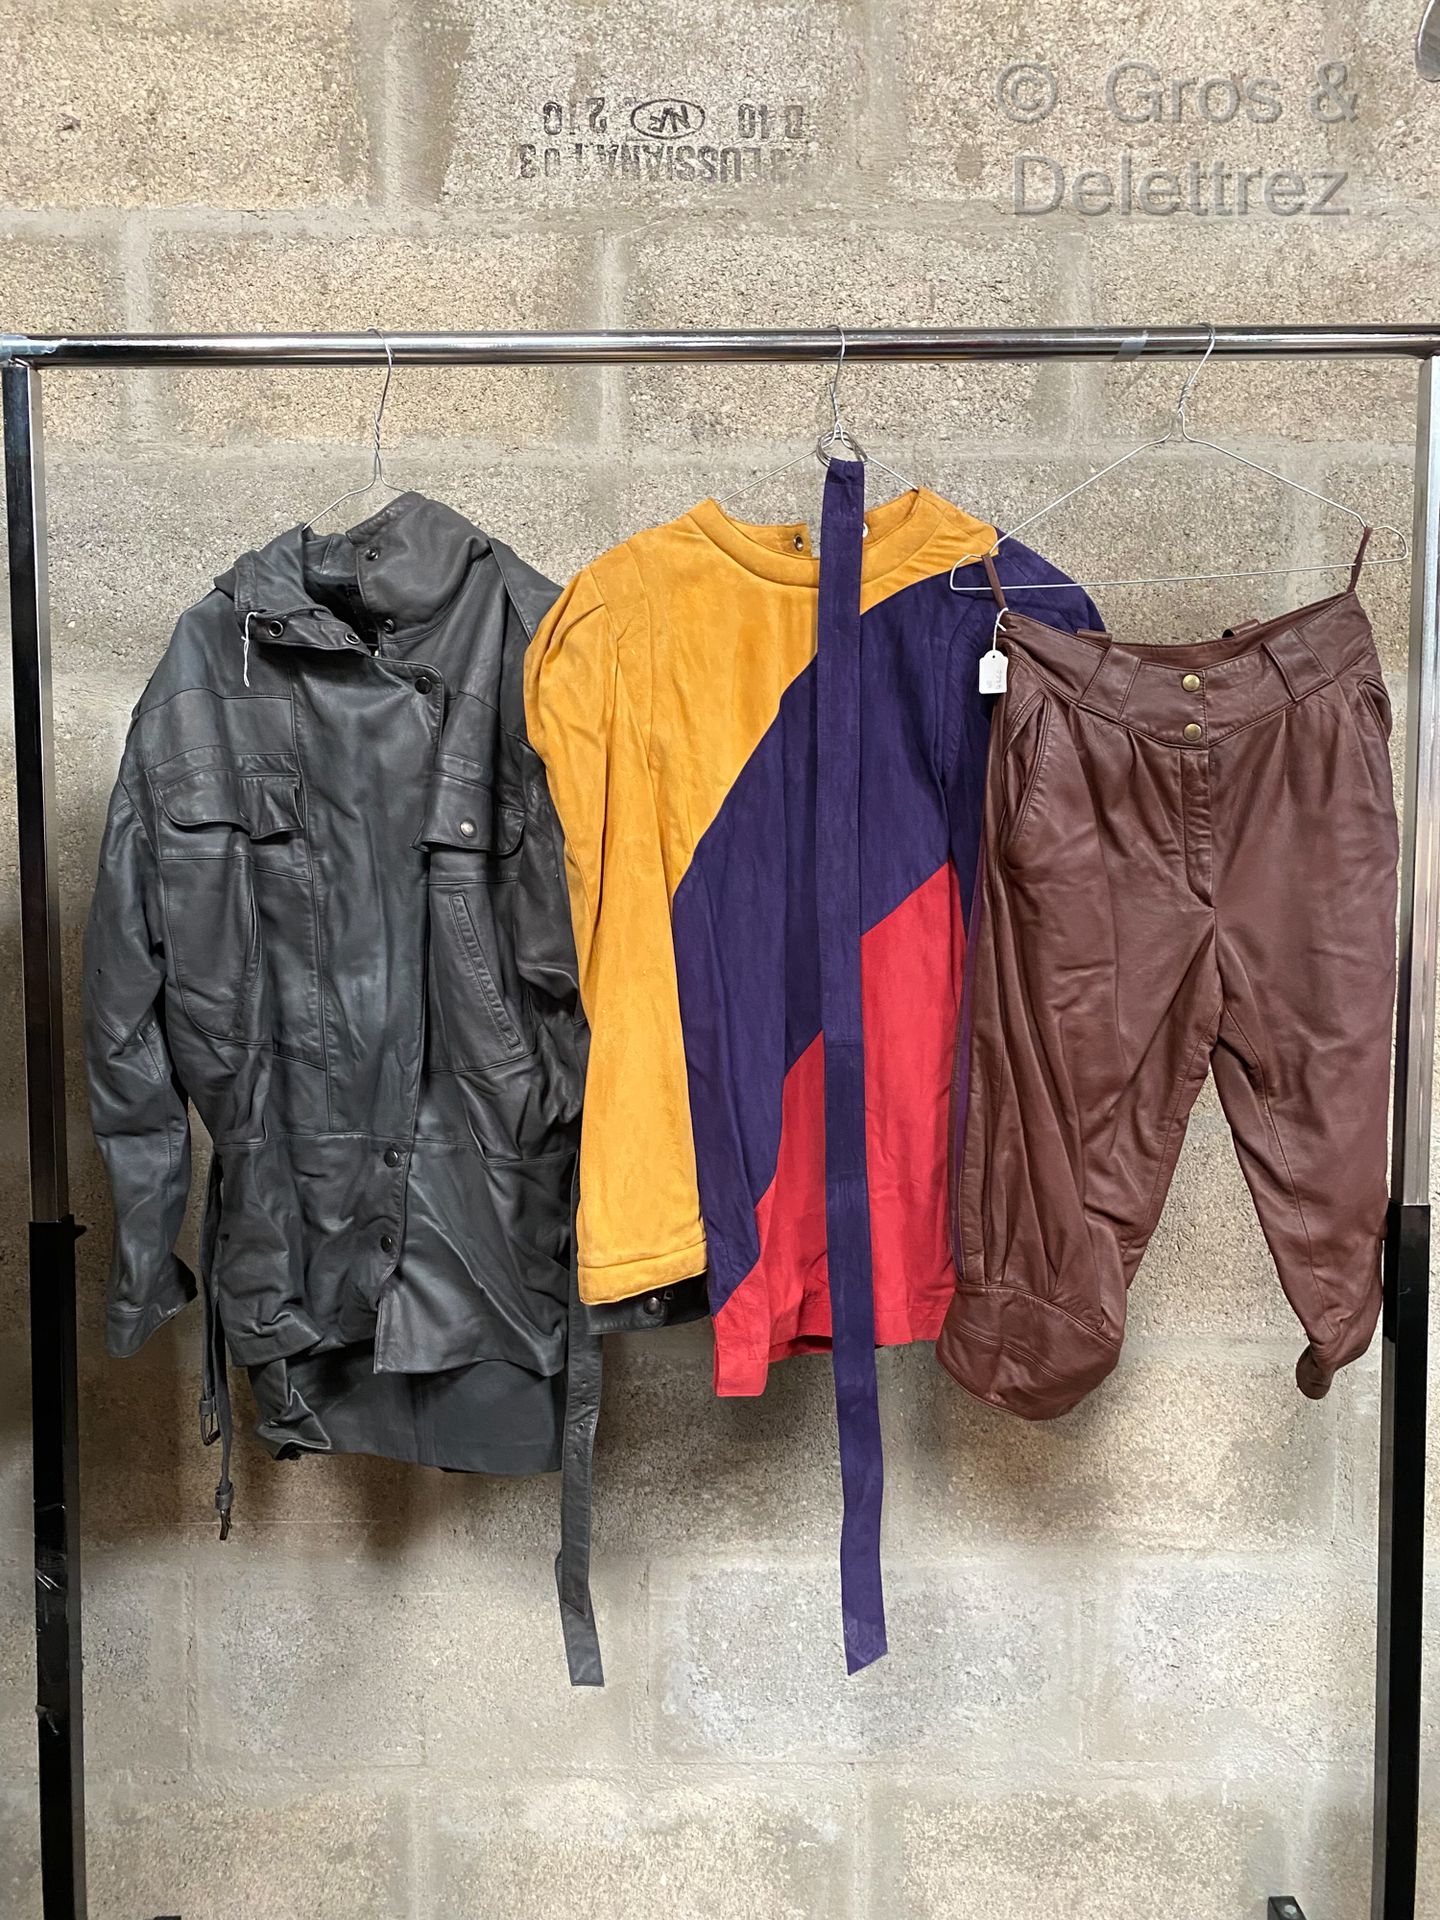 Null CLAUDE MONTANA FOR IDEAL CUIR，套装包括灰色皮革连帽大衣，带三色腰带的上衣，紫色、红色和黄色麂皮和棕色皮革长裤